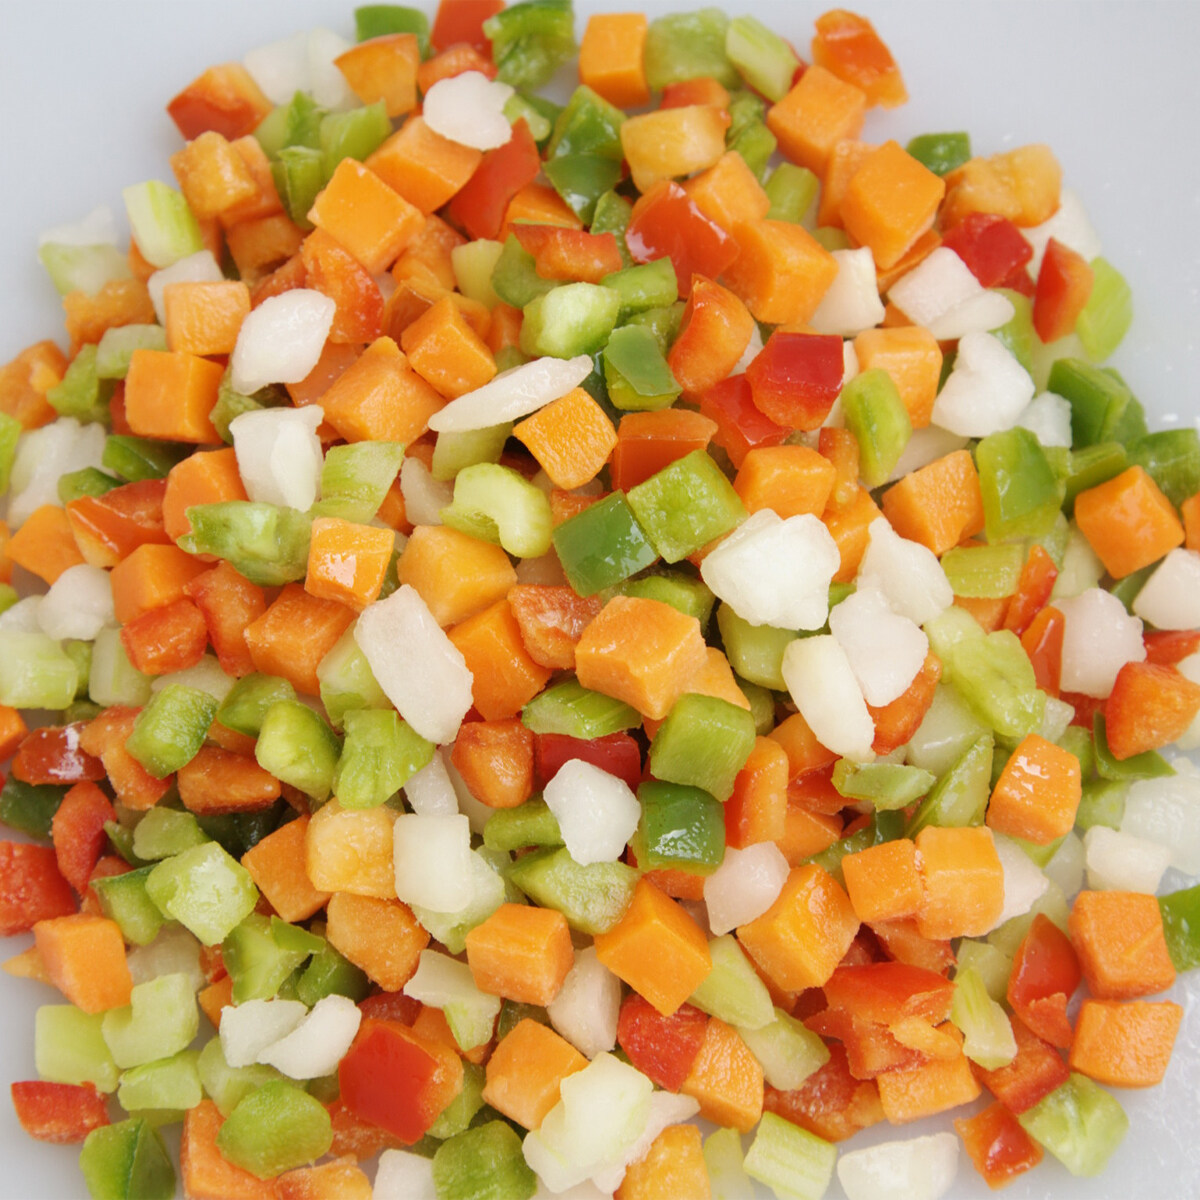 Dondurulmuş havuç yeşil bezelye fasulye sebzeleri dondurulmuş karışık sebzeler